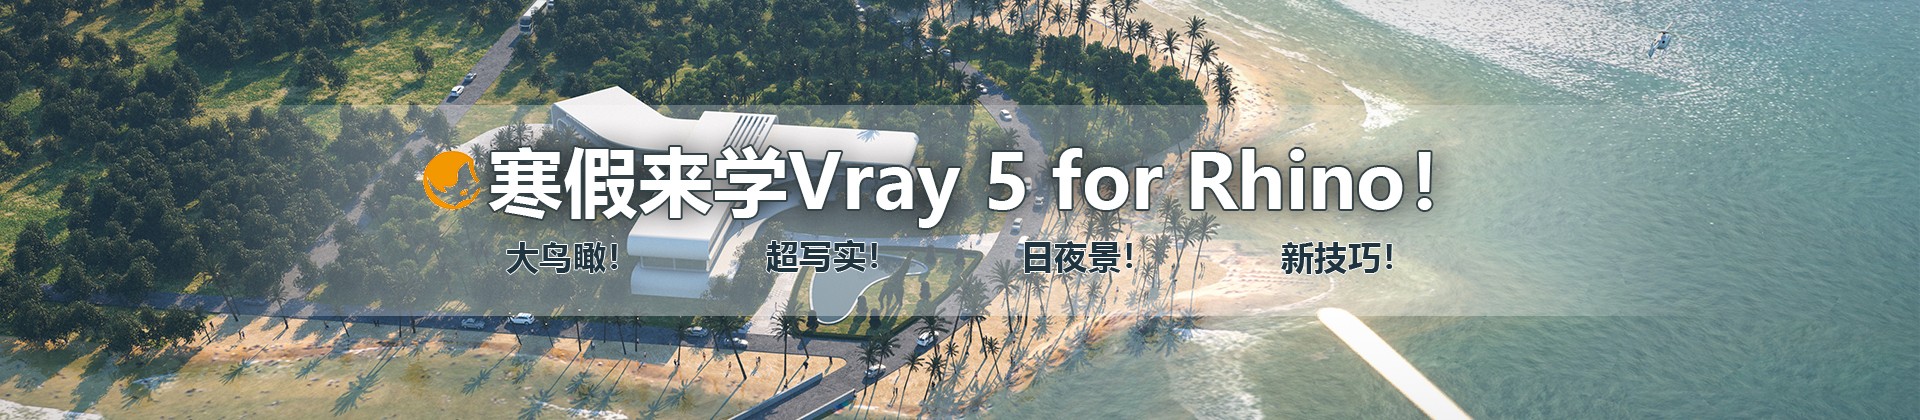 最新Vray5 for Rhino大鸟瞰/人视写实渲染教程